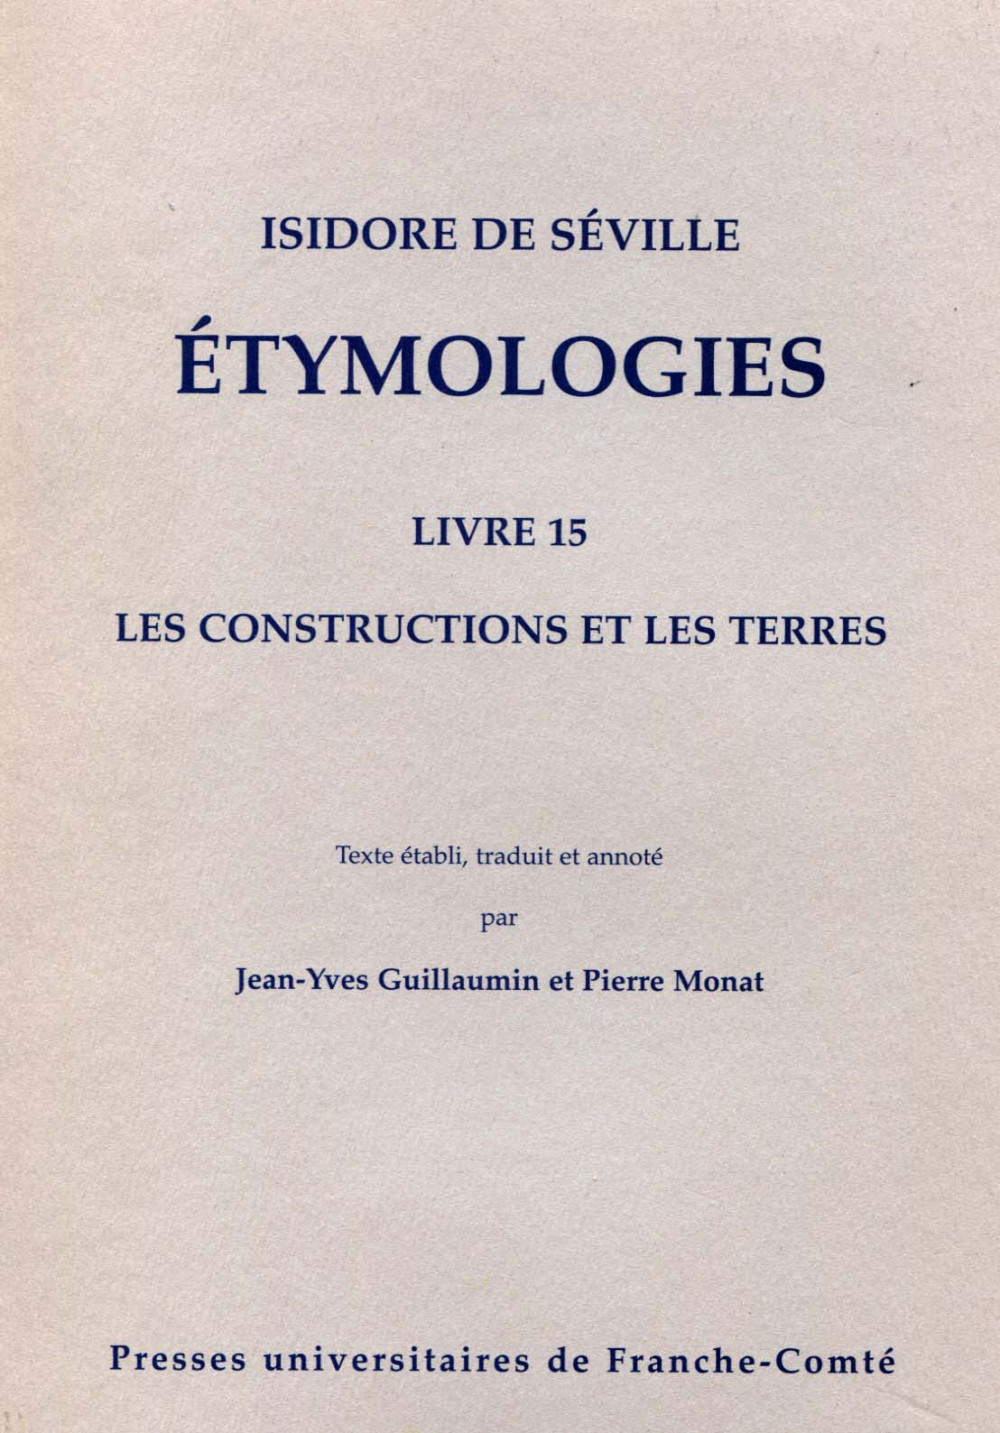 Isidore de Séville. ETYMOLOGIES. Livre 15 Les constructions et les terres.